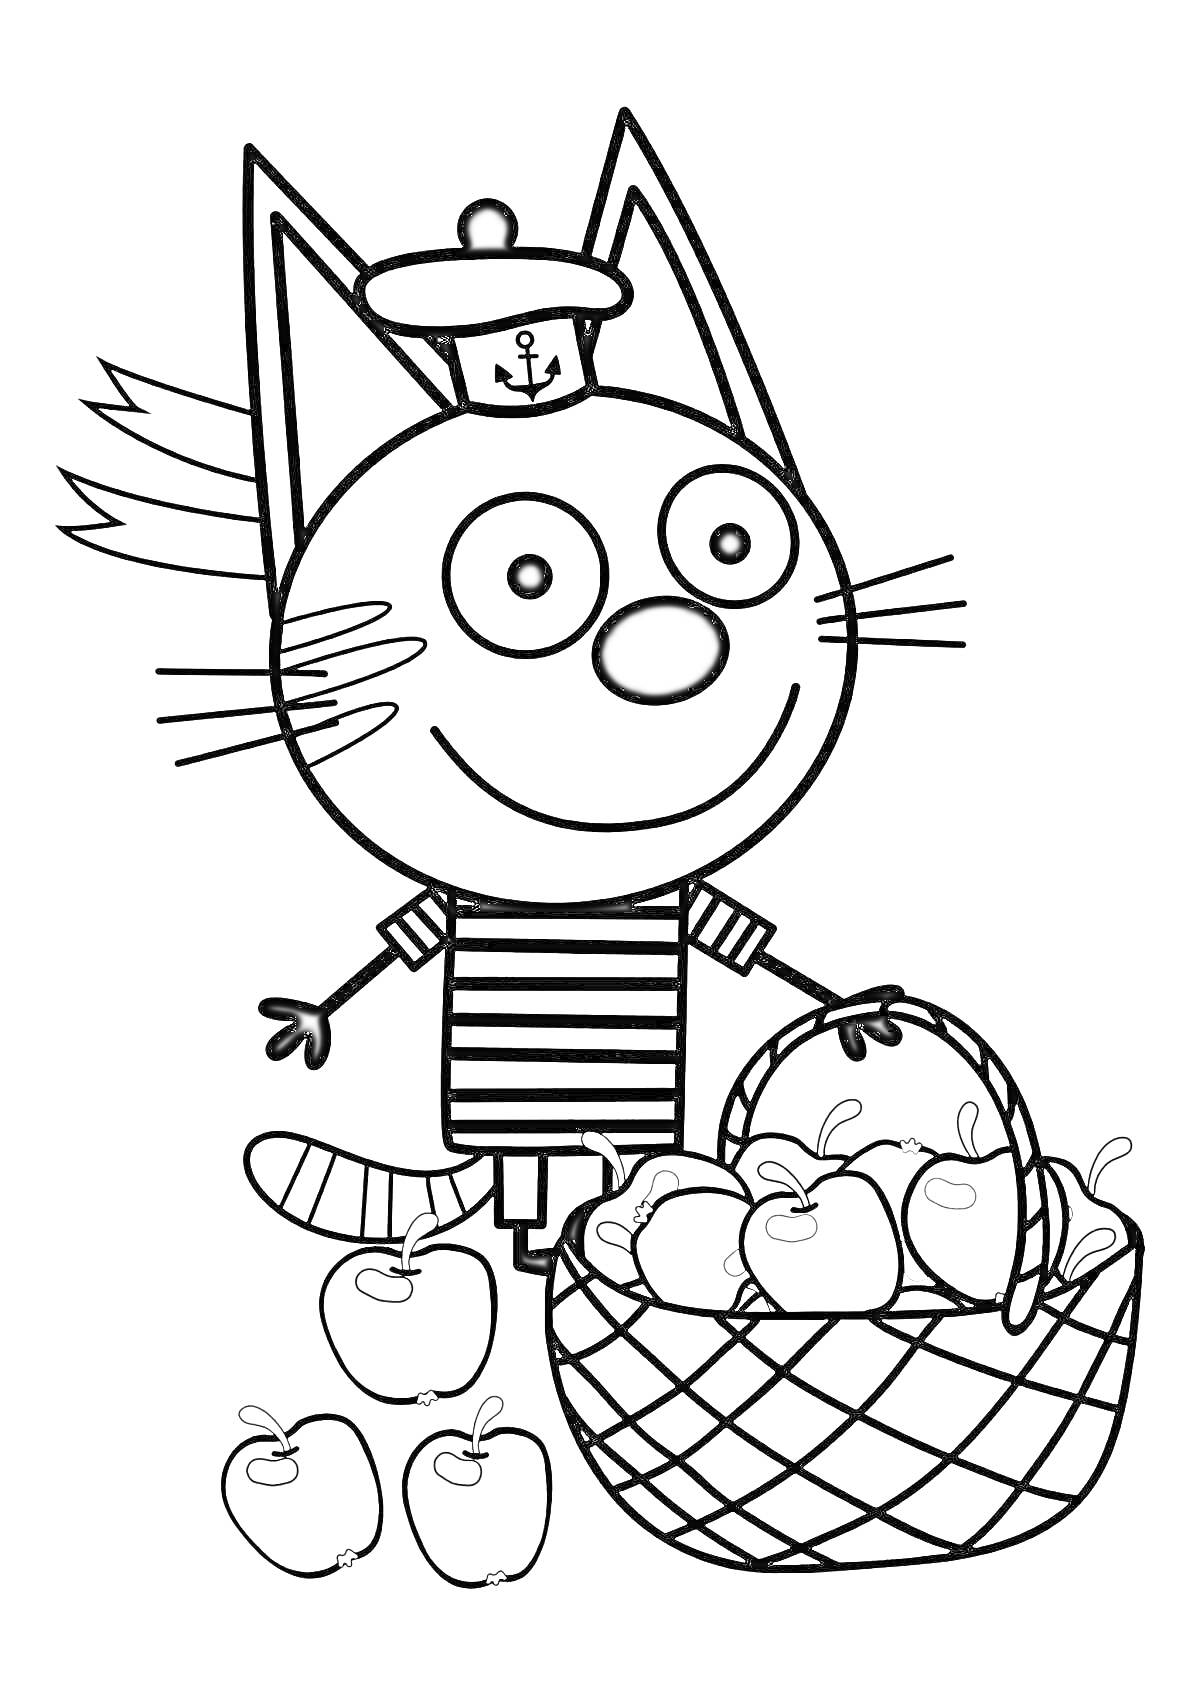 Котенок в тельняшке с корзиной яблок